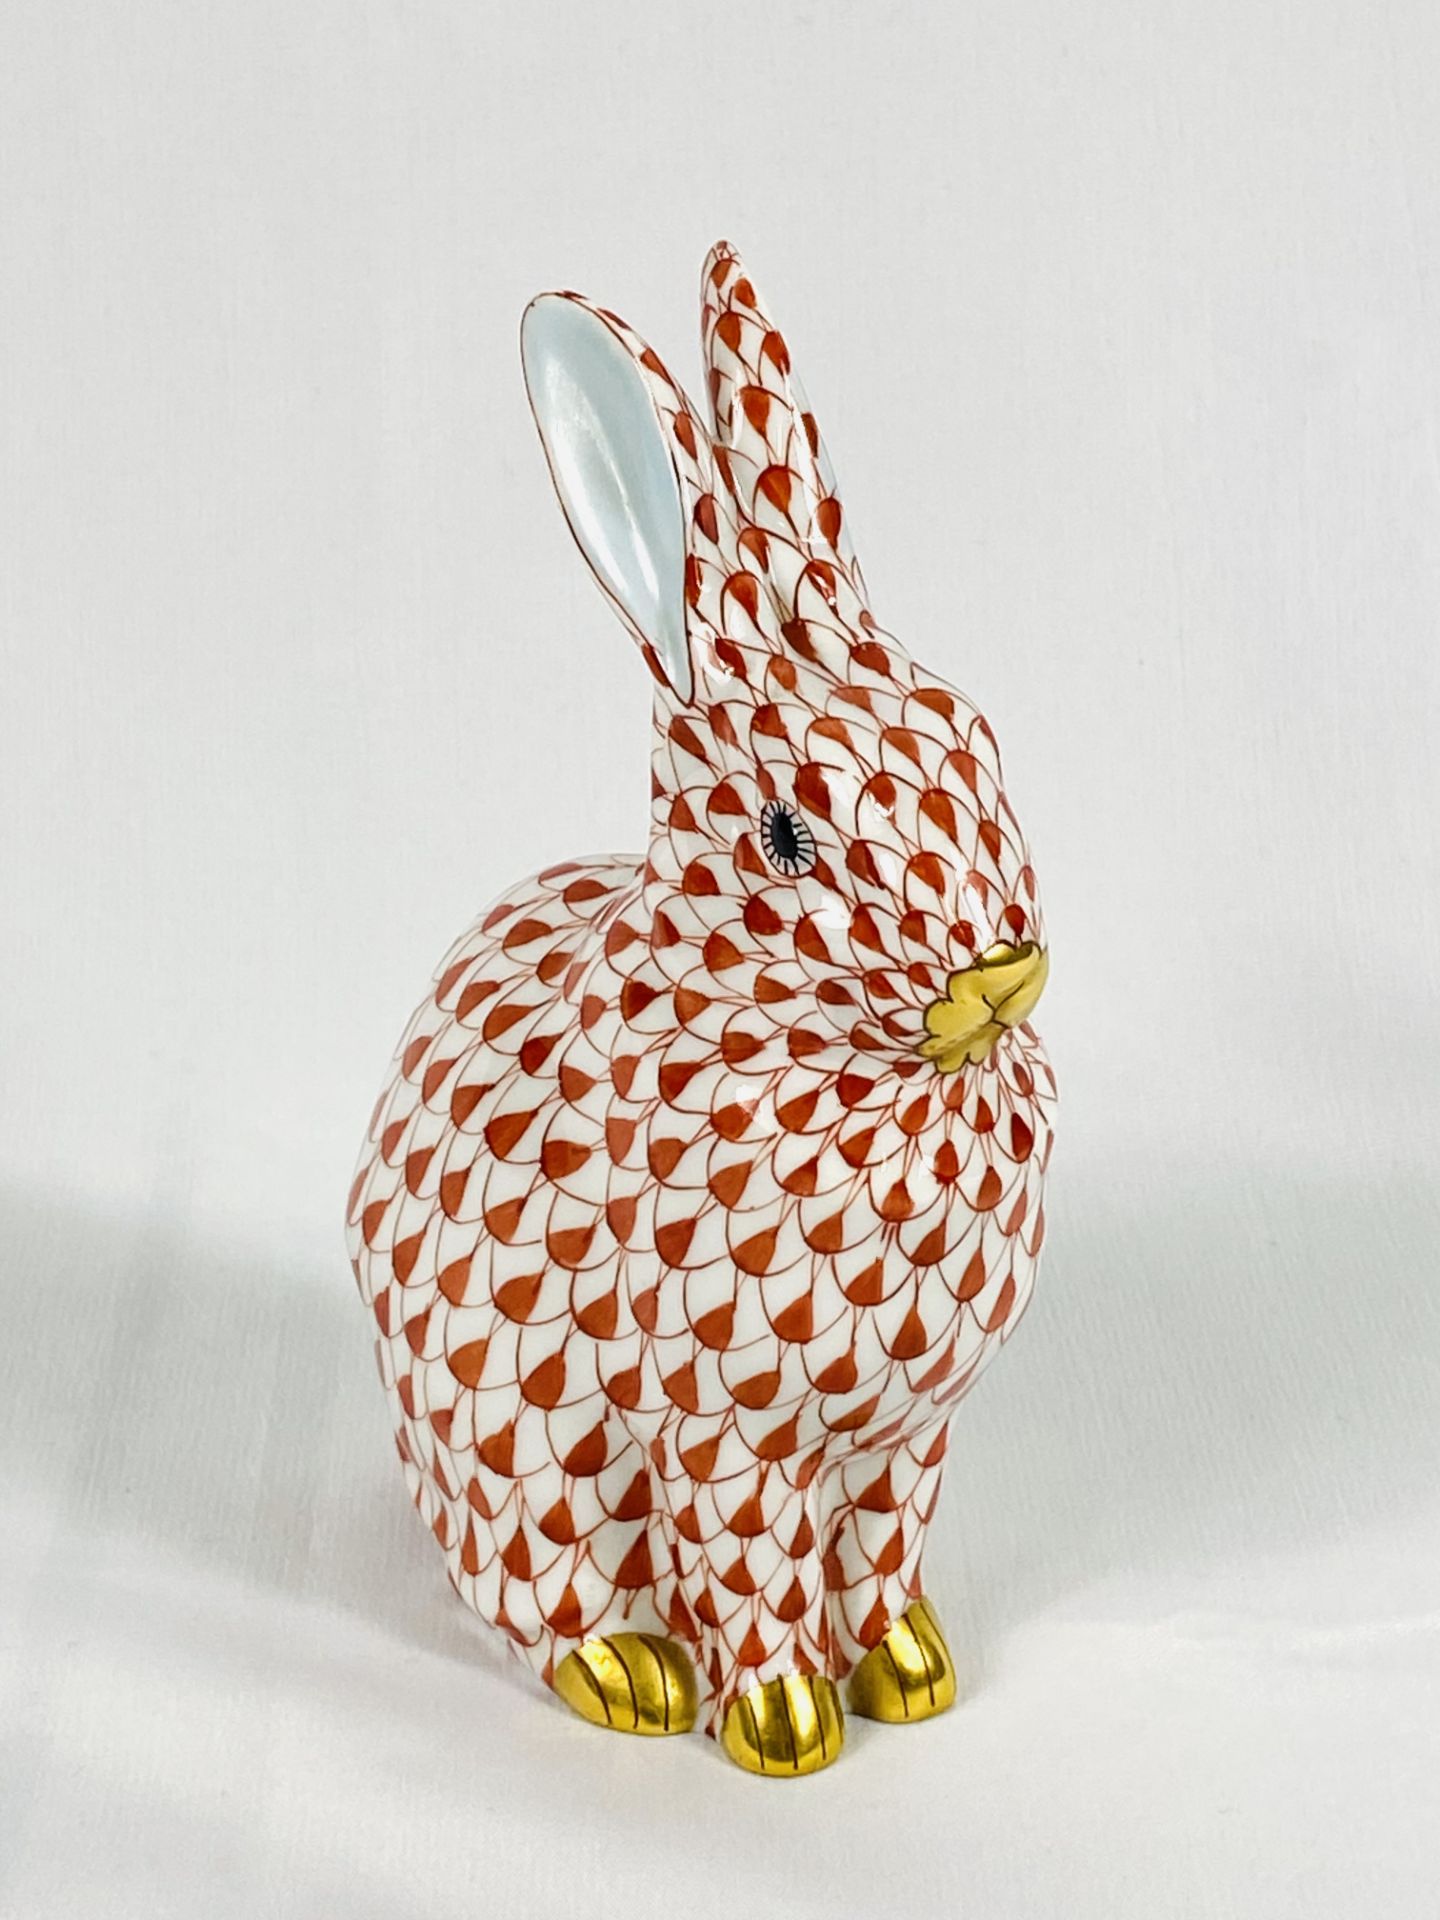 Herend porcelain rabbit - Image 2 of 4